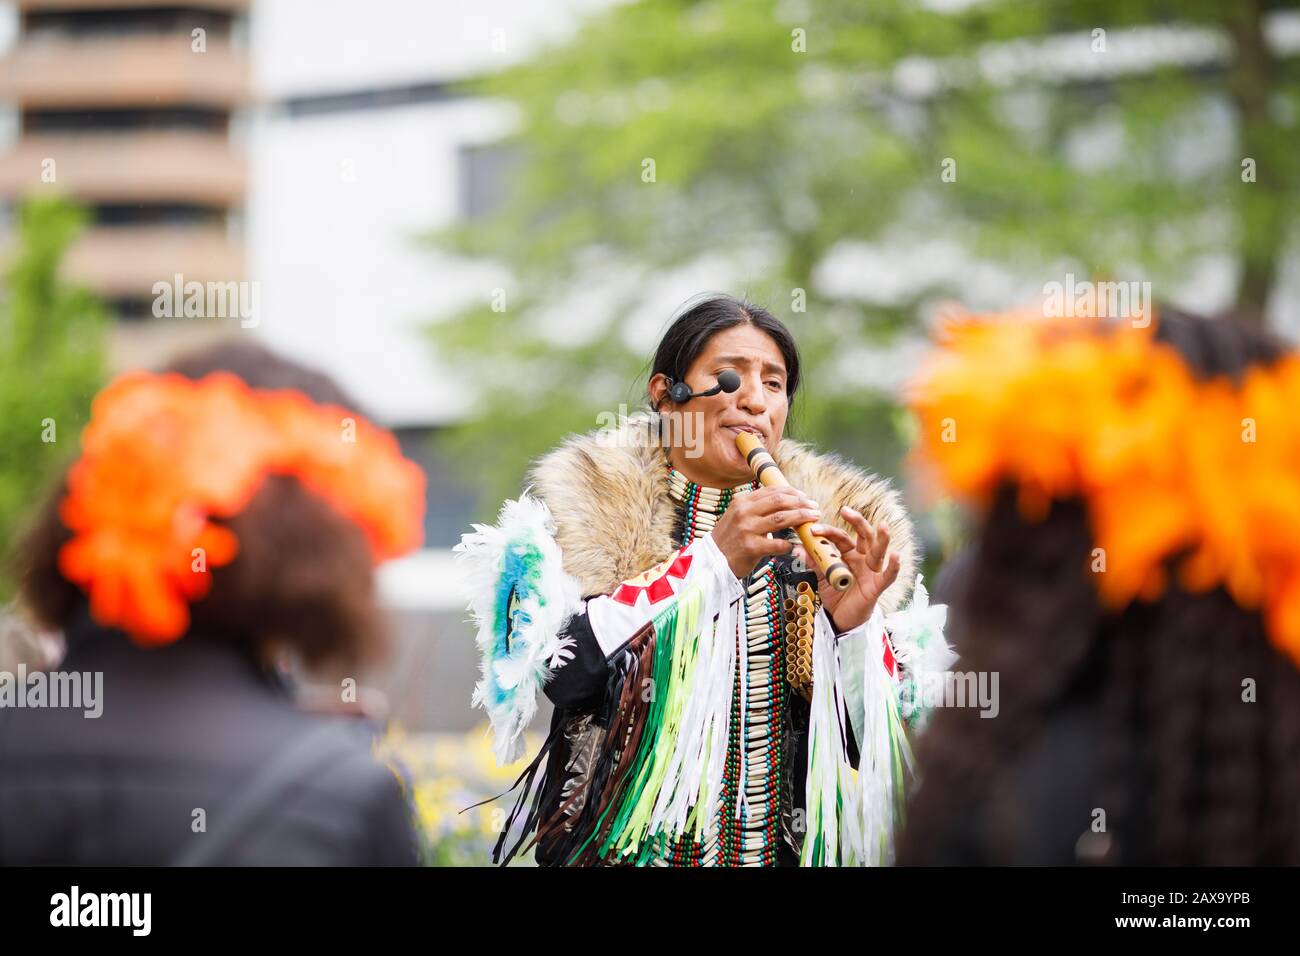 Natif américain indien jouant des notes musicales sur la flûte Banque D'Images